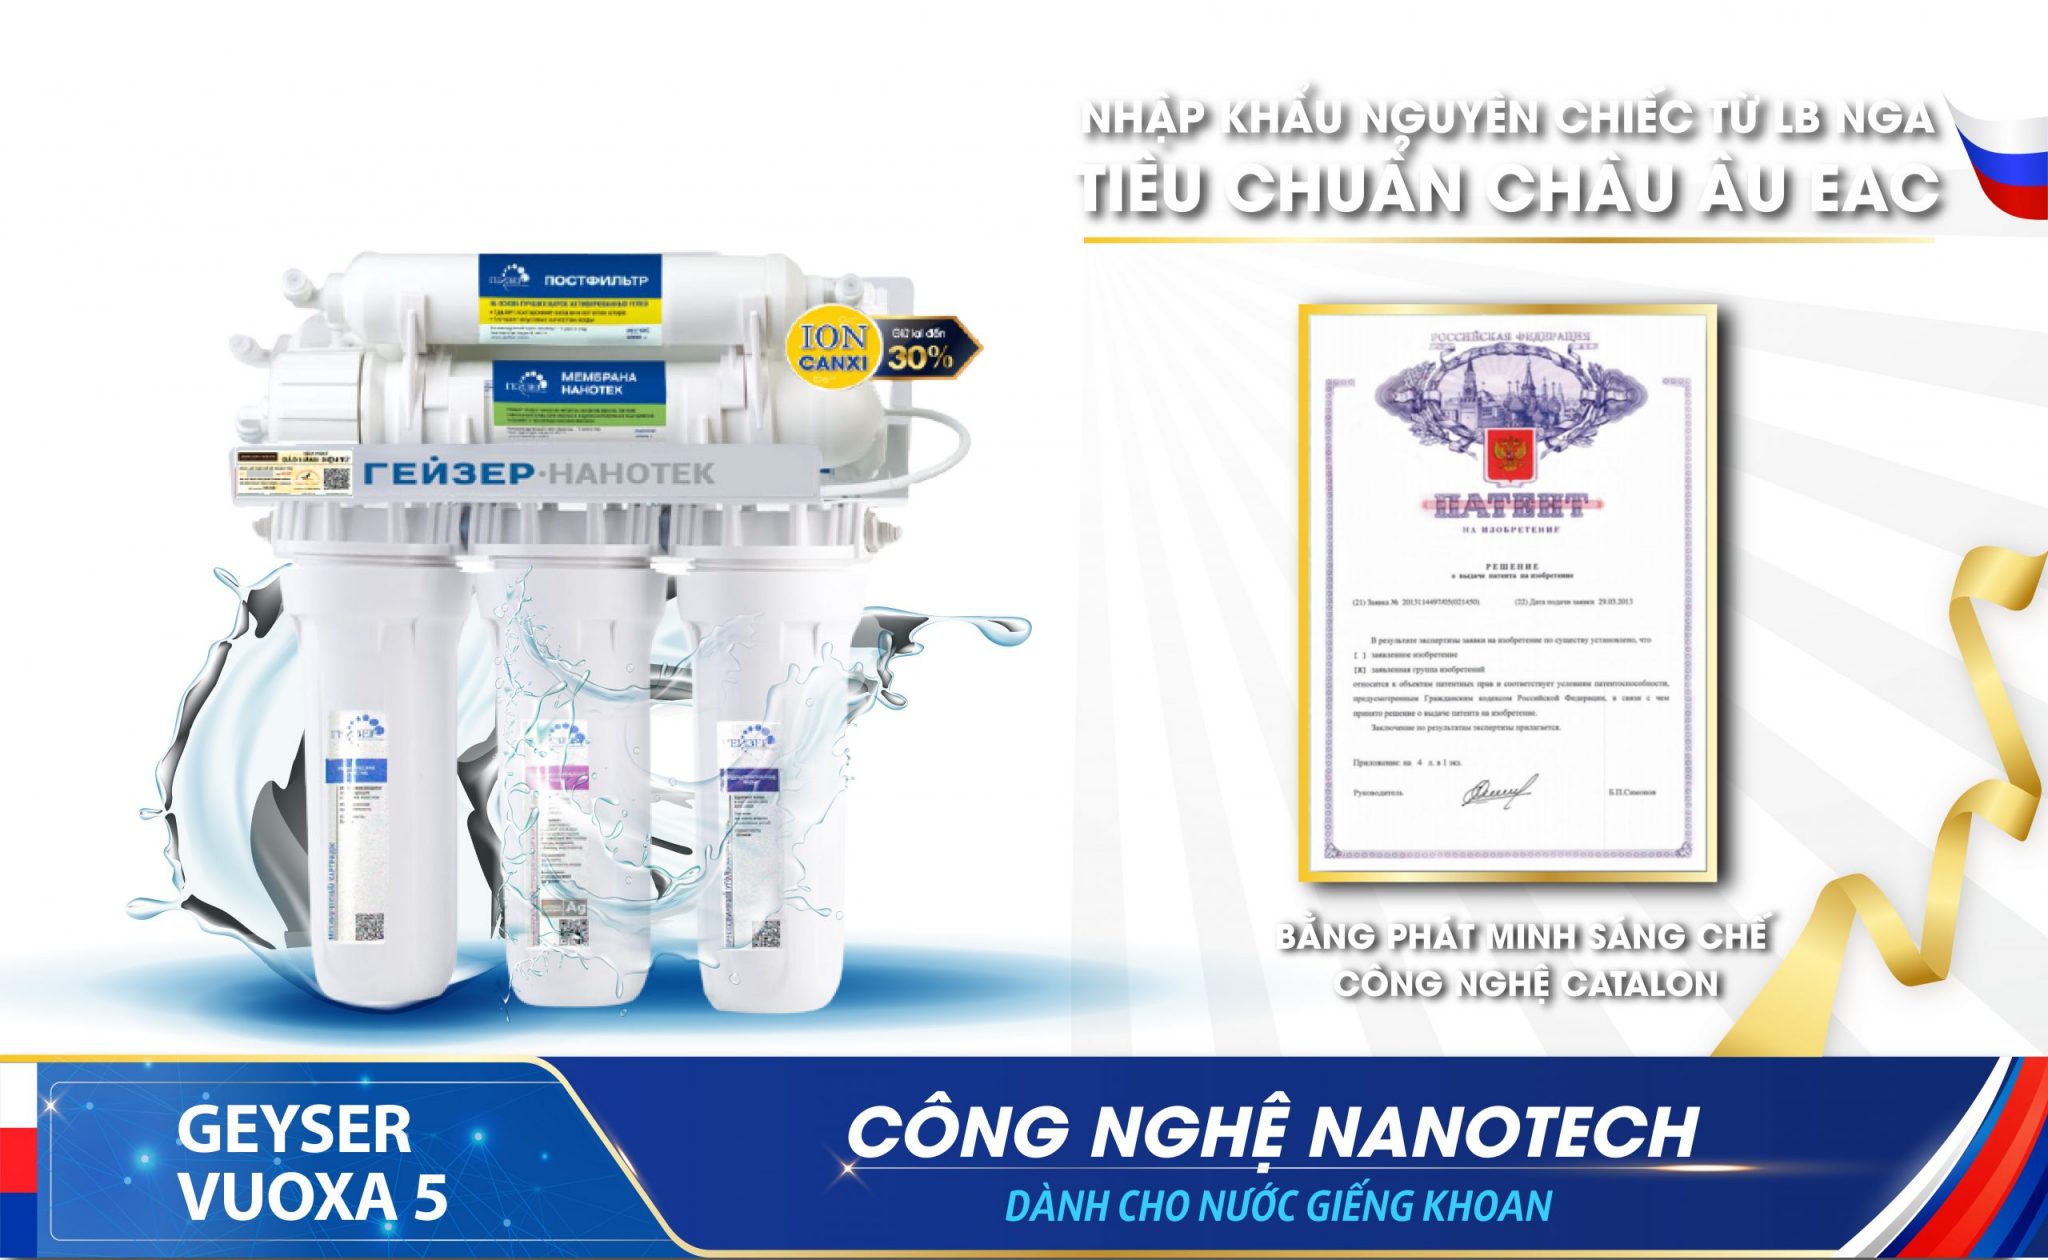 Công nghệ nanotech của máy lọc nước Geyser Vuoxa 5